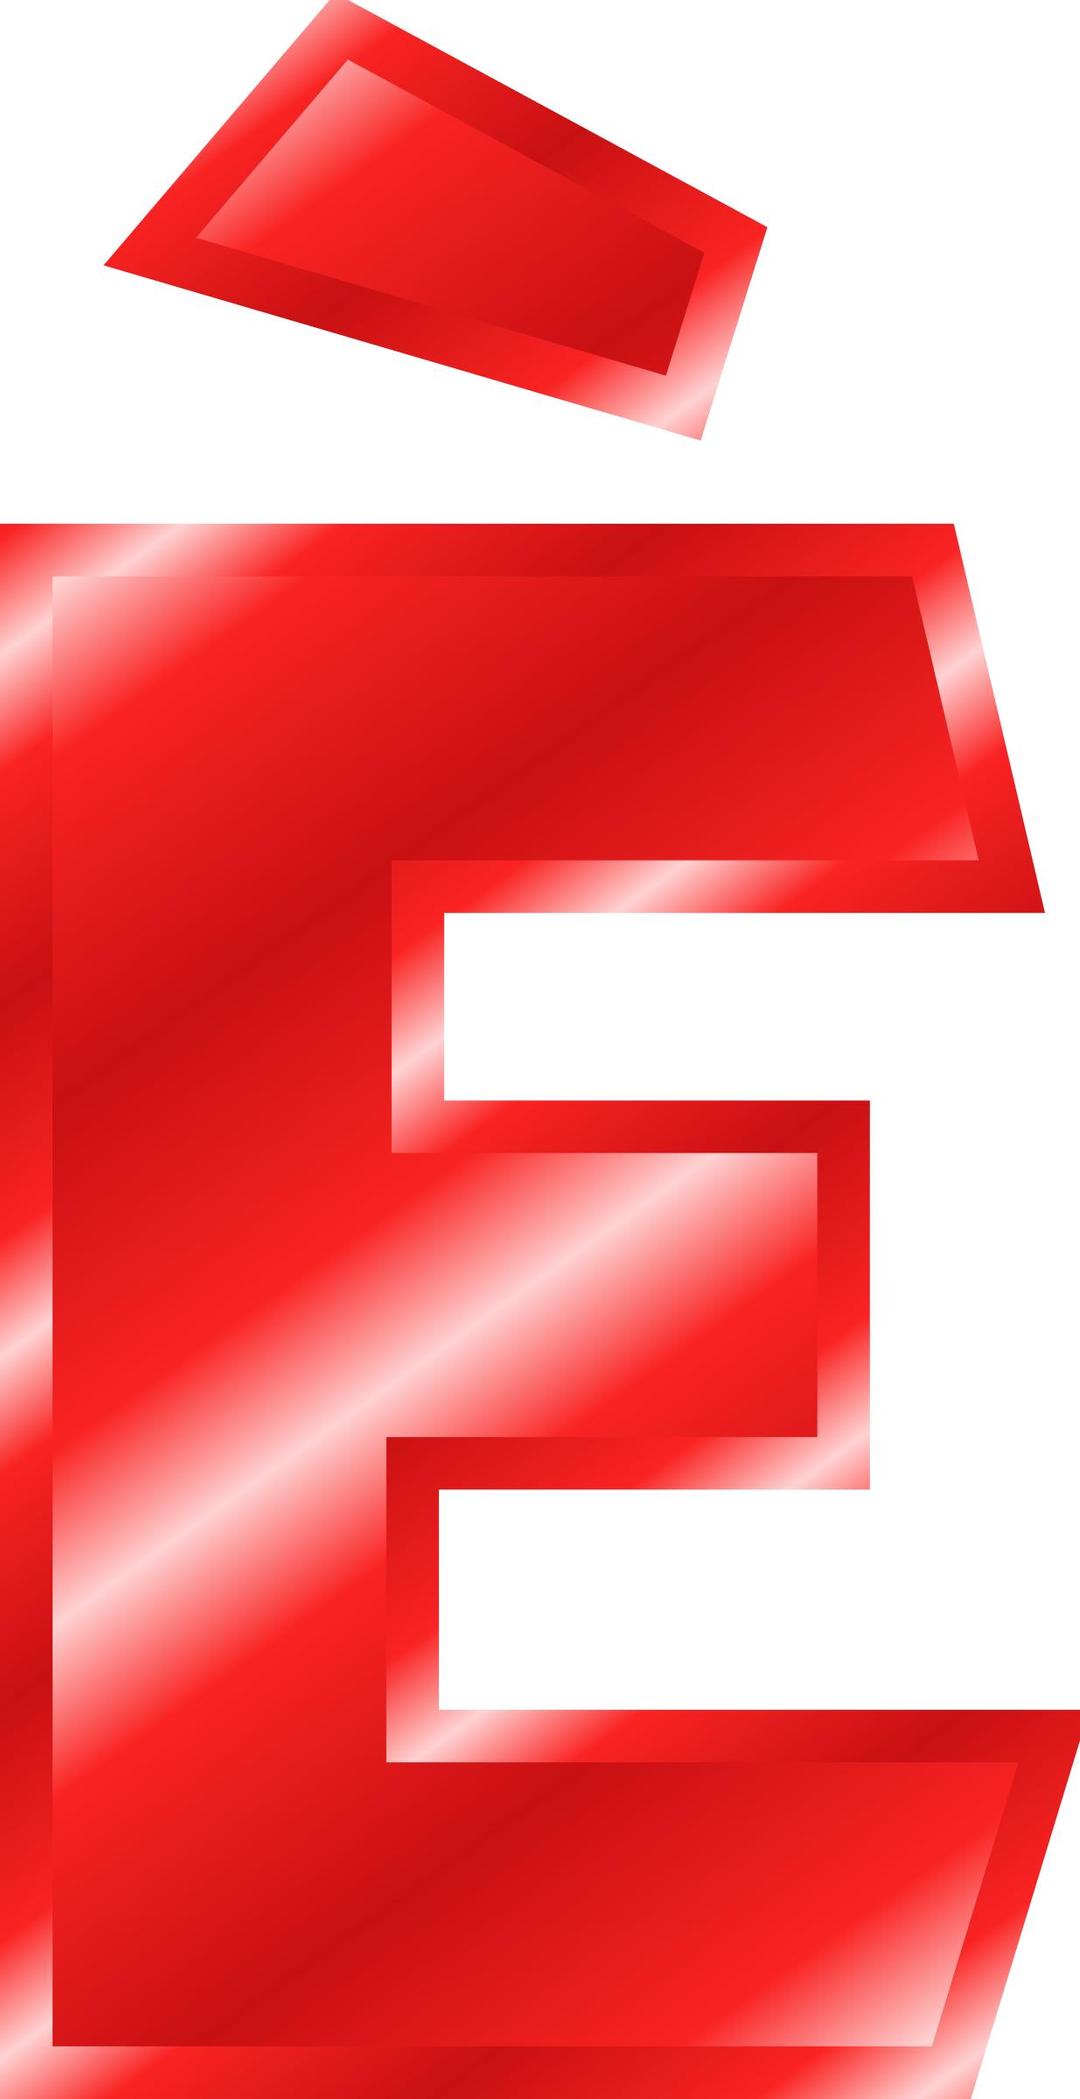 Effect-Letters-Alphabet-red: È png transparent